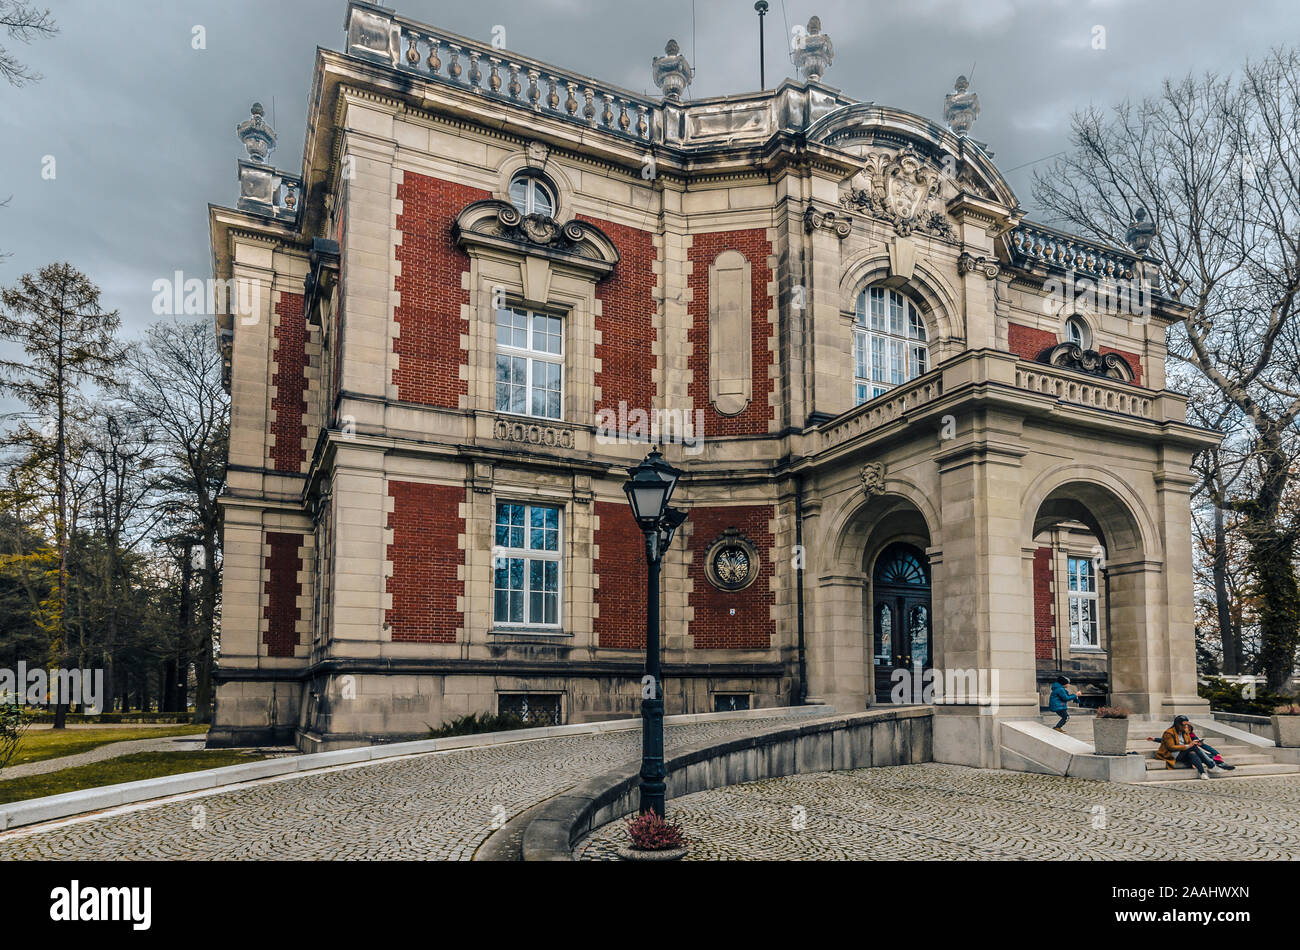 Świerklaniec, Schlesien, Polen; 16. November 2019: Palast der Kavalier in Louis XIII-Stil auf einem bewölkten Herbst Tag gebaut Stockfoto